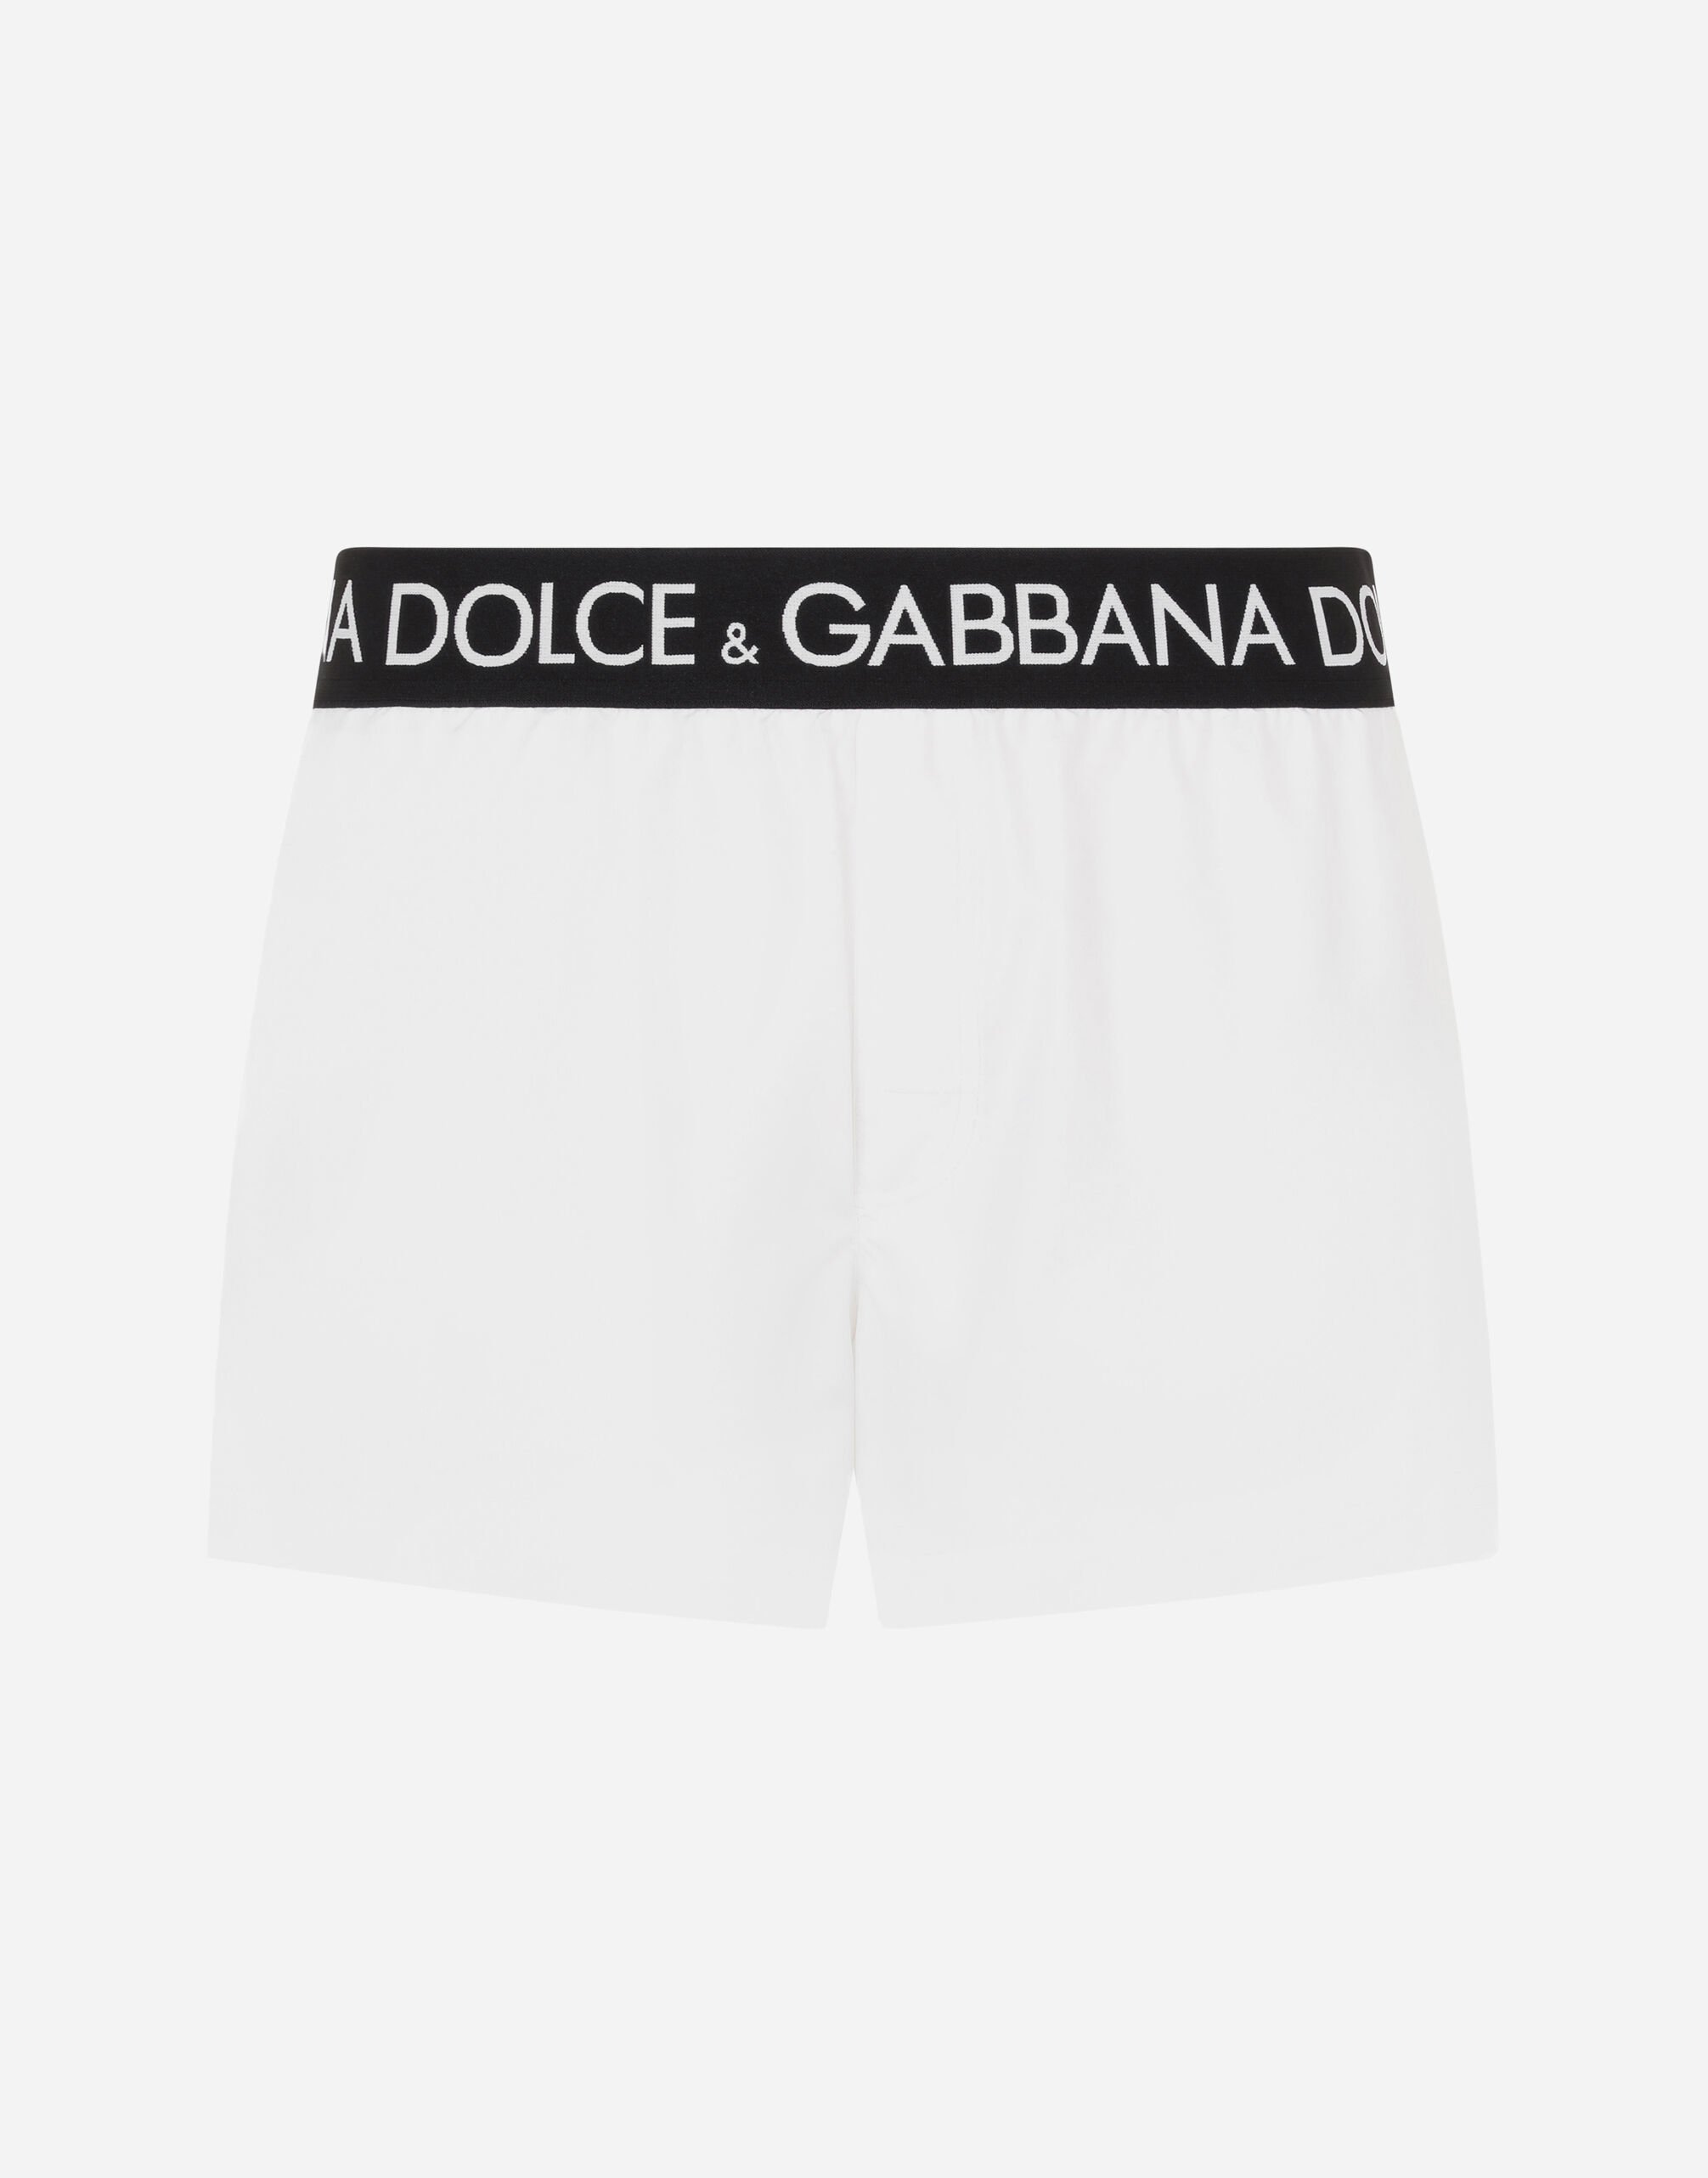 Dolce & Gabbana Short swim trunks with branded stretch waistband White M4A51JONO05